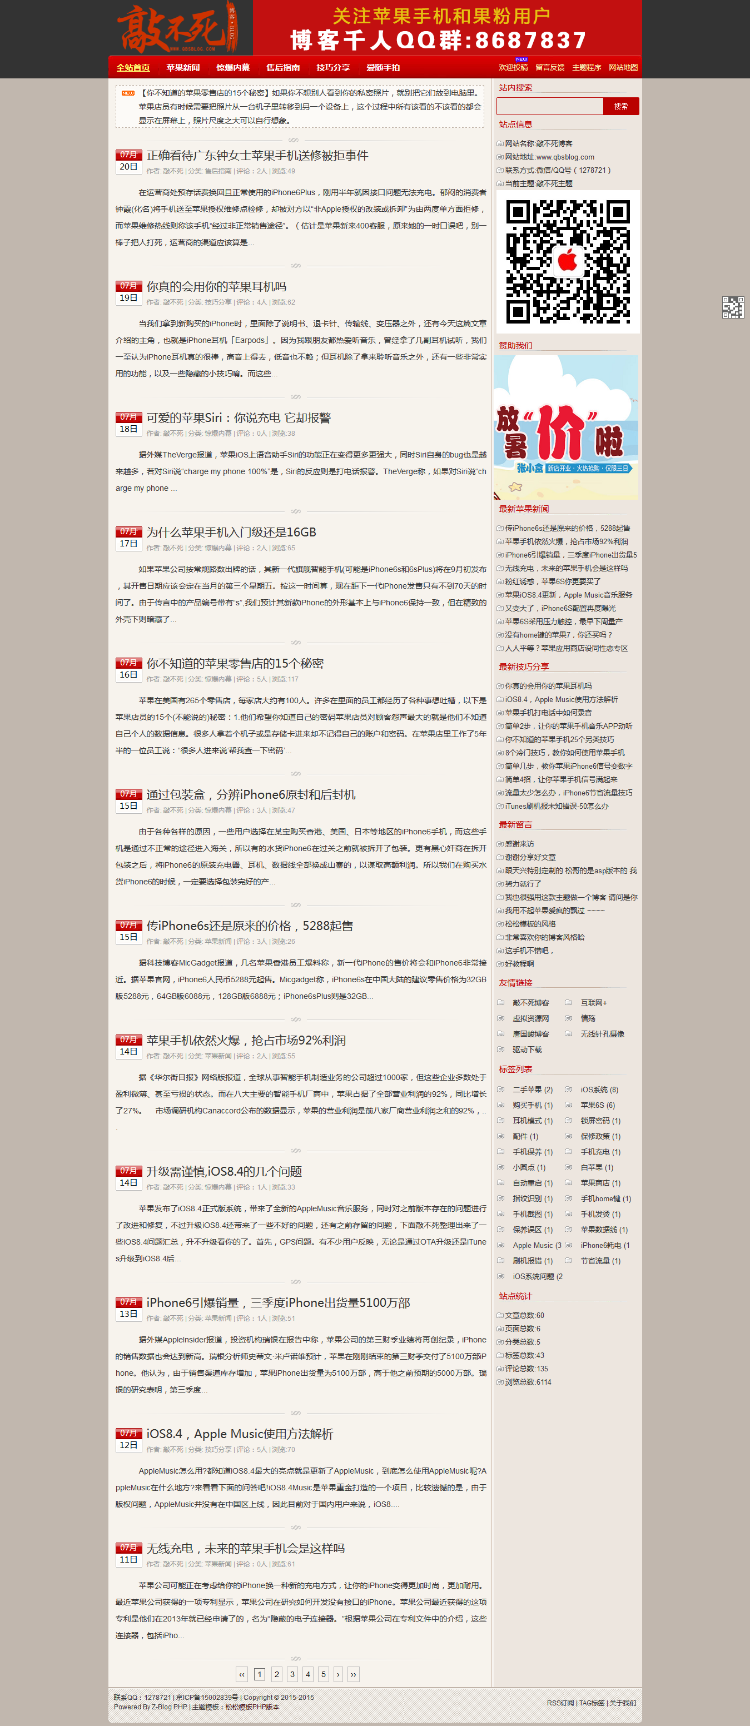 卢松松博客模板zblogphp版,适合seo功能强大,已支持zblog php1.5